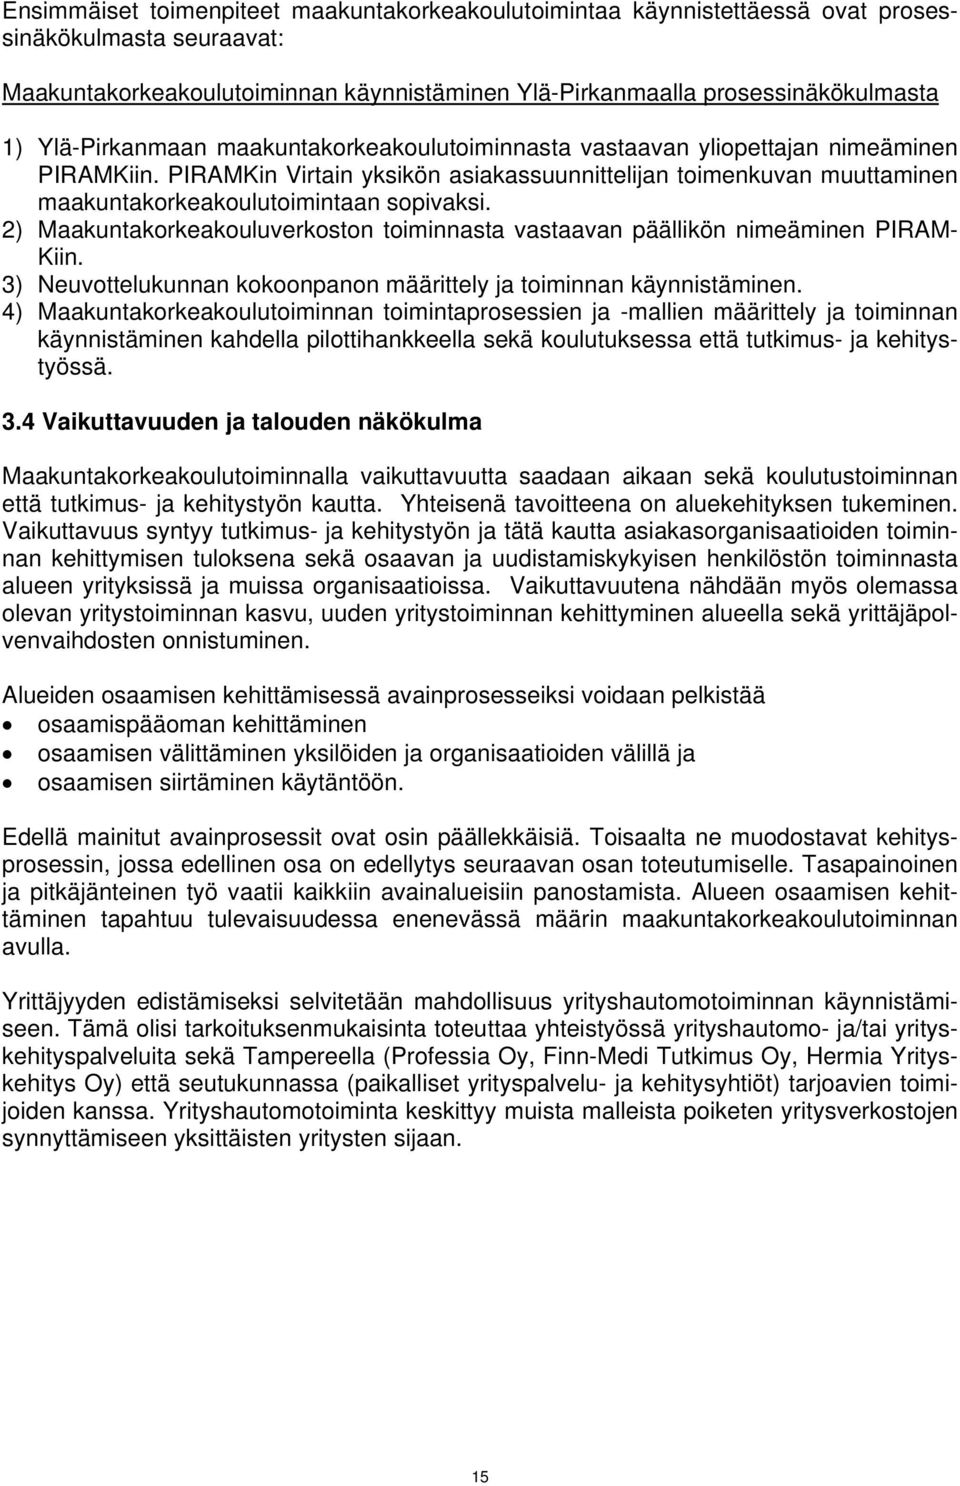 PIRAMKin Virtain yksikön asiakassuunnittelijan toimenkuvan muuttaminen maakuntakorkeakoulutoimintaan sopivaksi. 2) Maakuntakorkeakouluverkoston toiminnasta vastaavan päällikön nimeäminen PIRAM- Kiin.